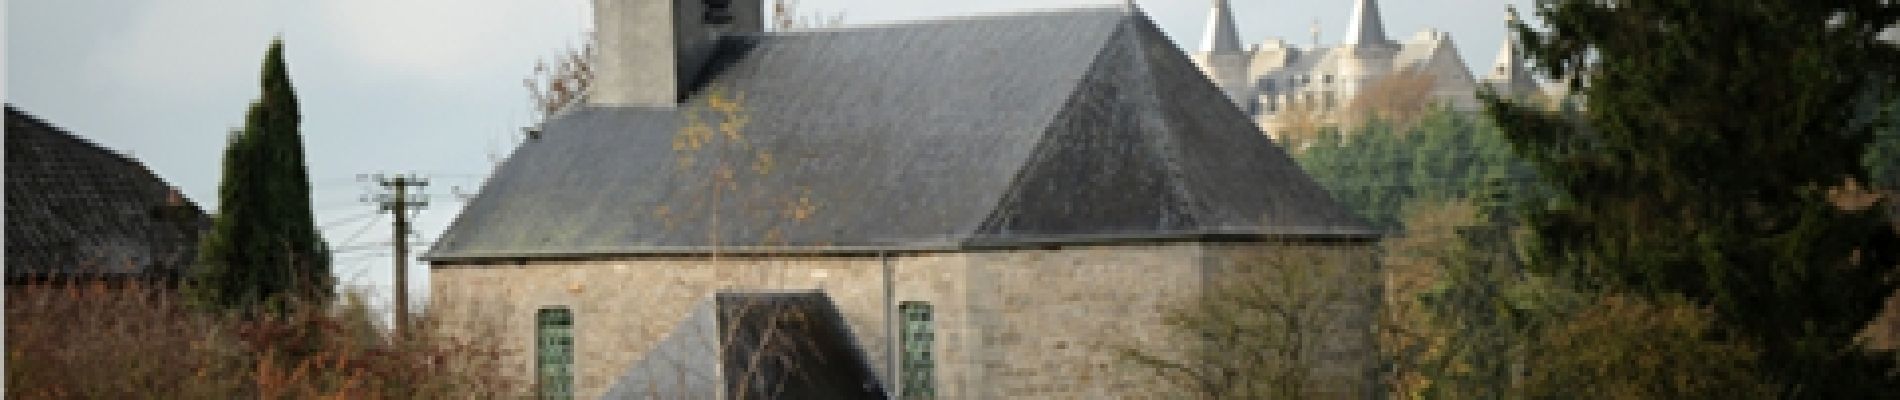 Point d'intérêt Rochefort - Chapelle de Jamblinne - Photo